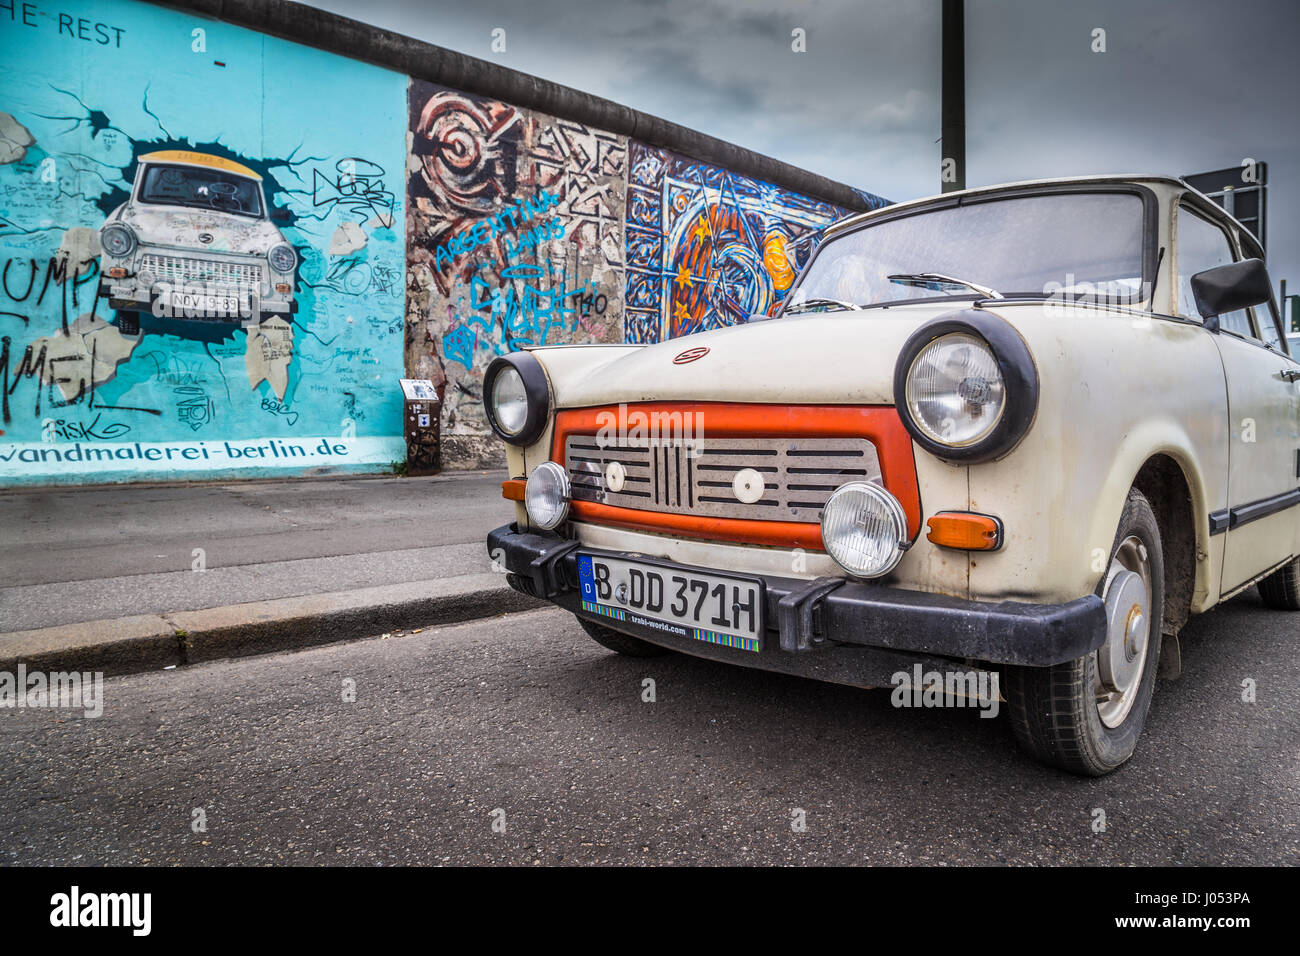 Berühmte Berliner Mauer (Berliner Mauer) in der East Side Gallery mit einer alten Trabant, das häufigste Fahrzeug verwendet in der DDR, Berlin, Deutschland Stockfoto